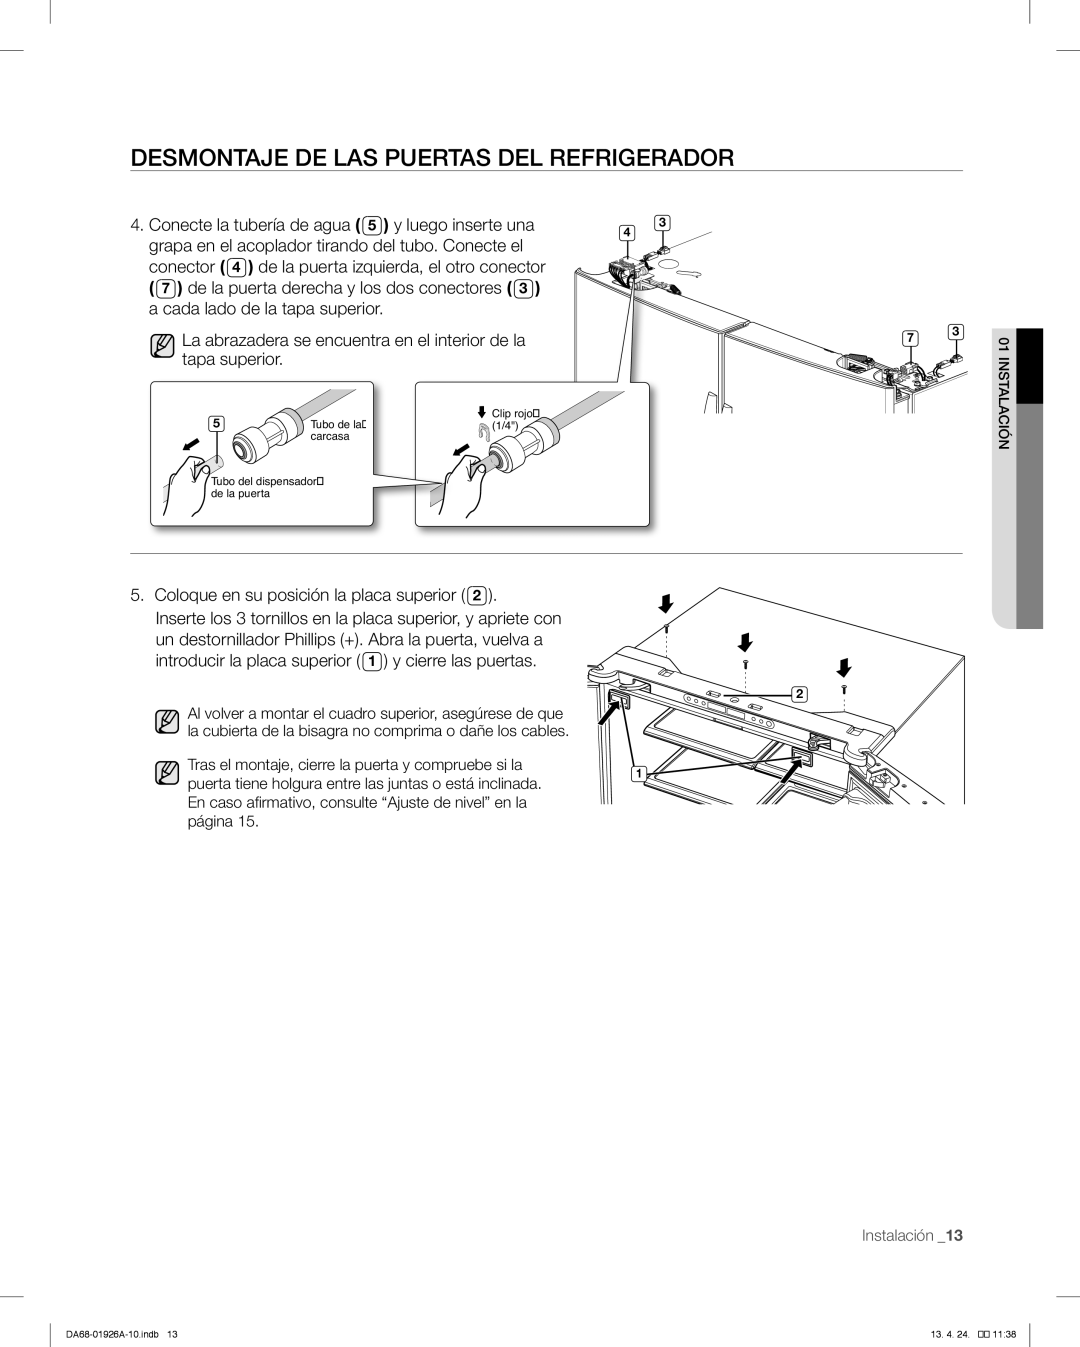 Samsung RFG293HAWP user manual Desmontaje De Las Puertas Del Refrigerador, Conecte la tubería de agua 5 y luego inserte una 